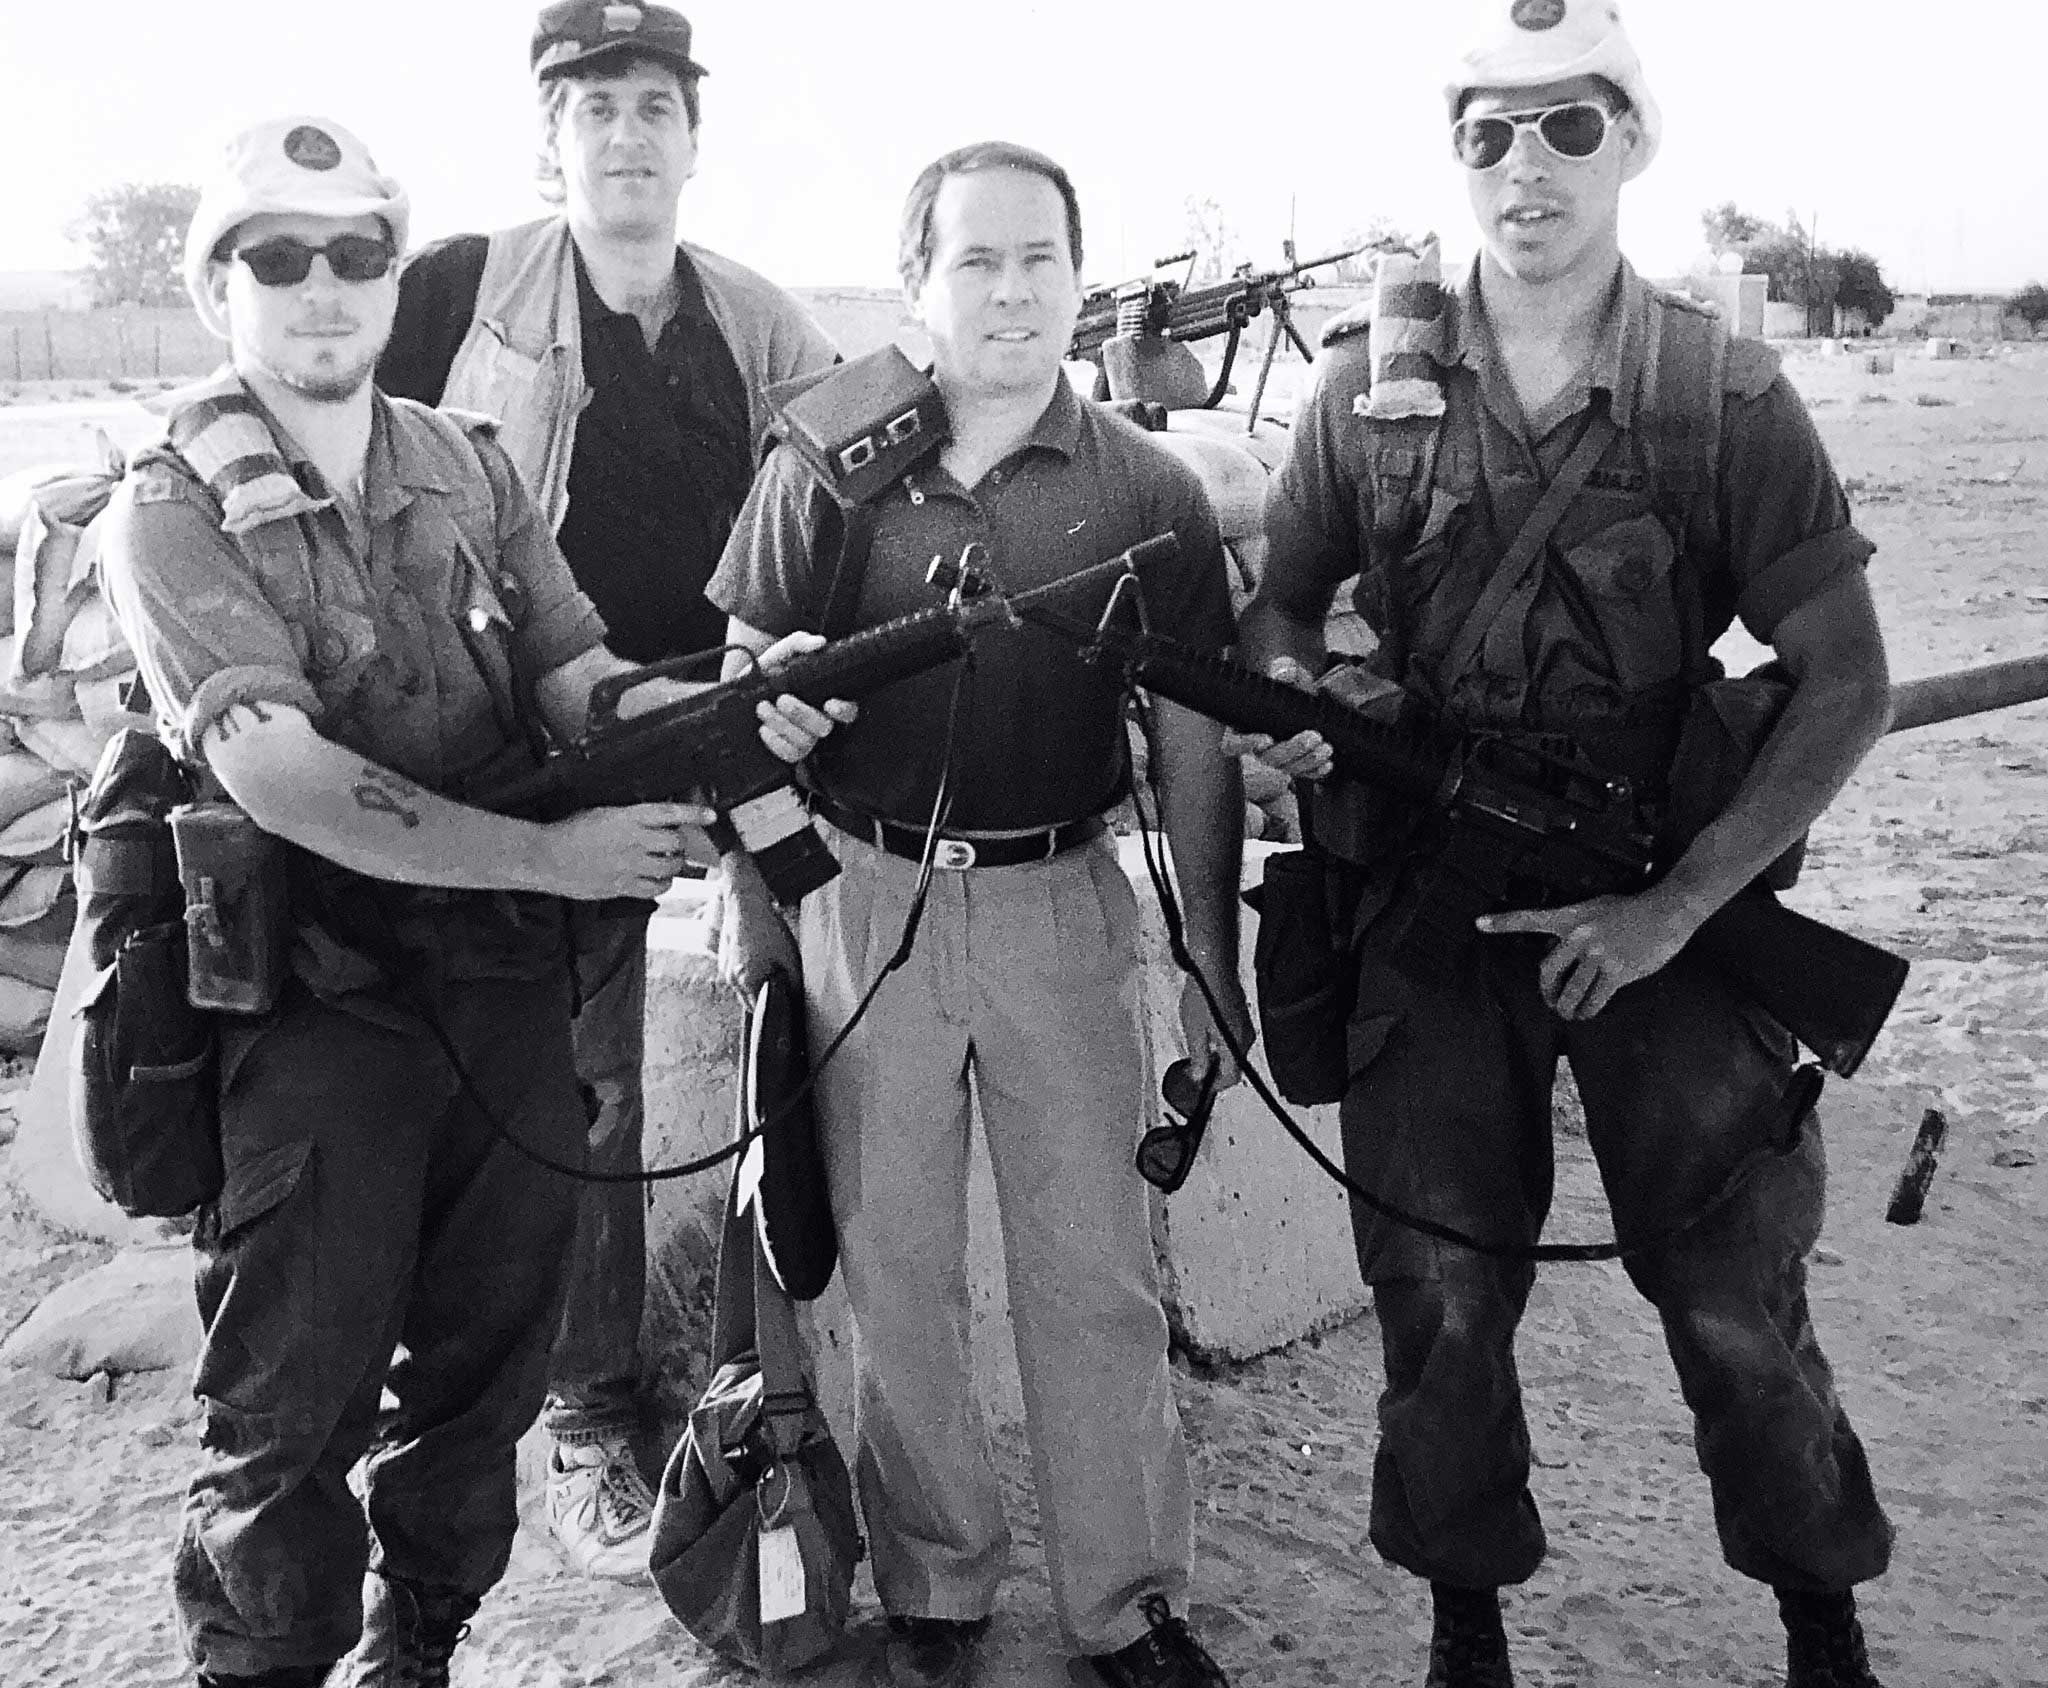 Le sénateur Munson (troisième à gauche) et le caméraman Mike Nolan (deuxième à gauche) près de Doha, au Qatar, pendant la première guerre du Golfe. (Crédit photo : Mike Nolan)